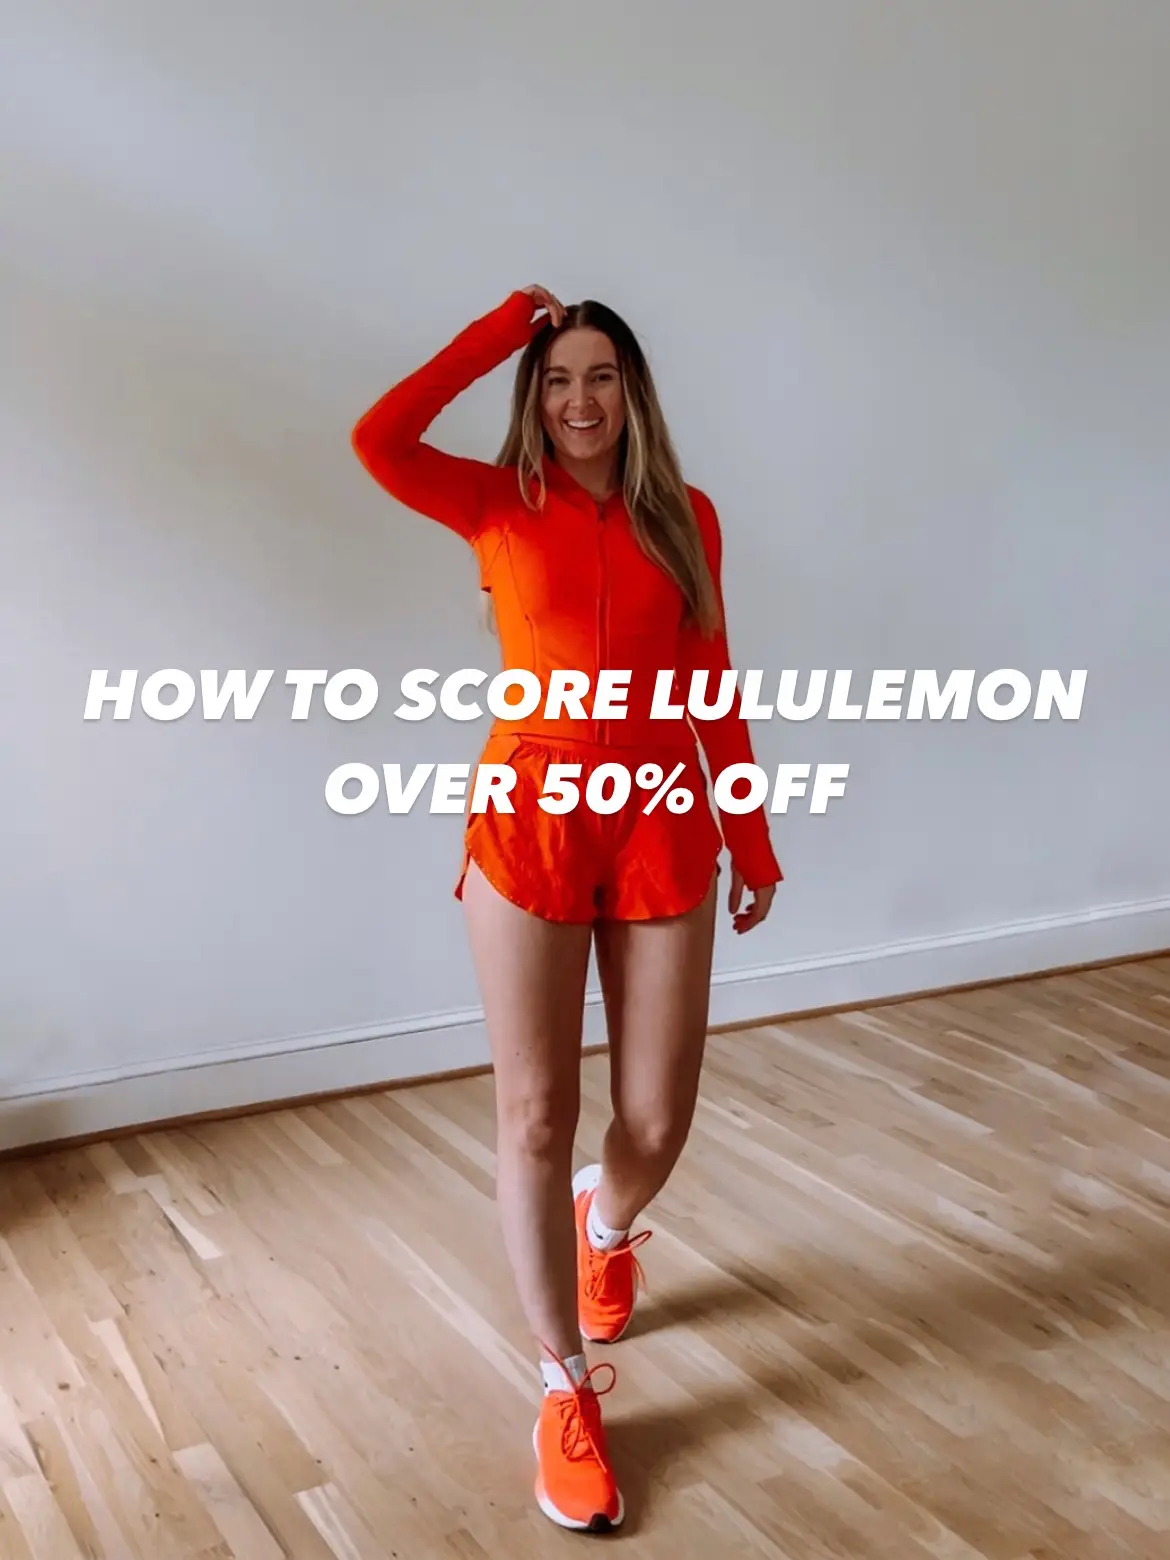 Lululemon Outlet Discounts - Lemon8 Search